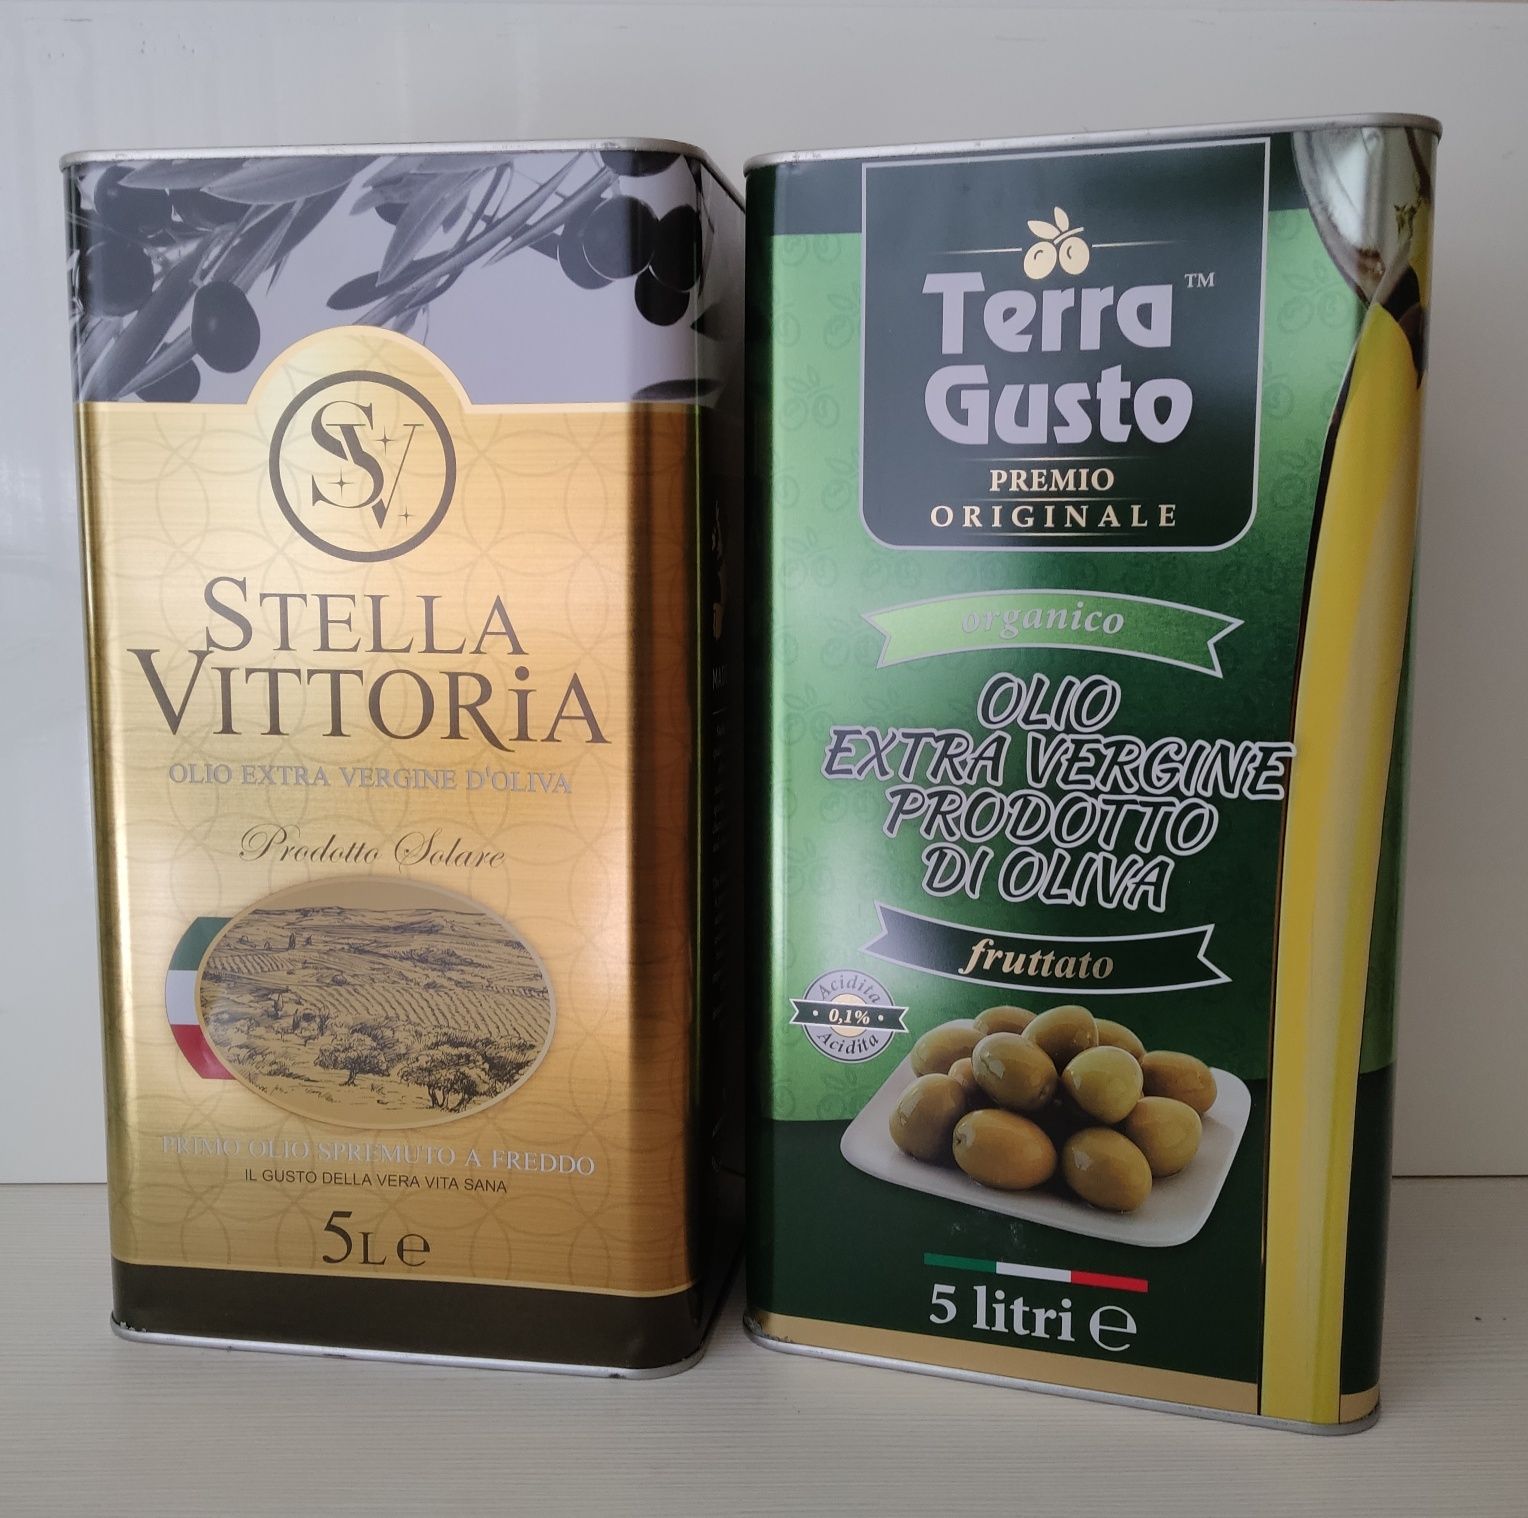 Масло оливковое/Италия/ дистрибъюторам от официального поставщика.